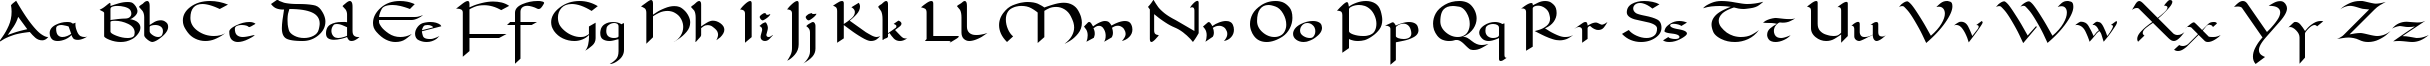 Пример написания английского алфавита шрифтом Carolingia